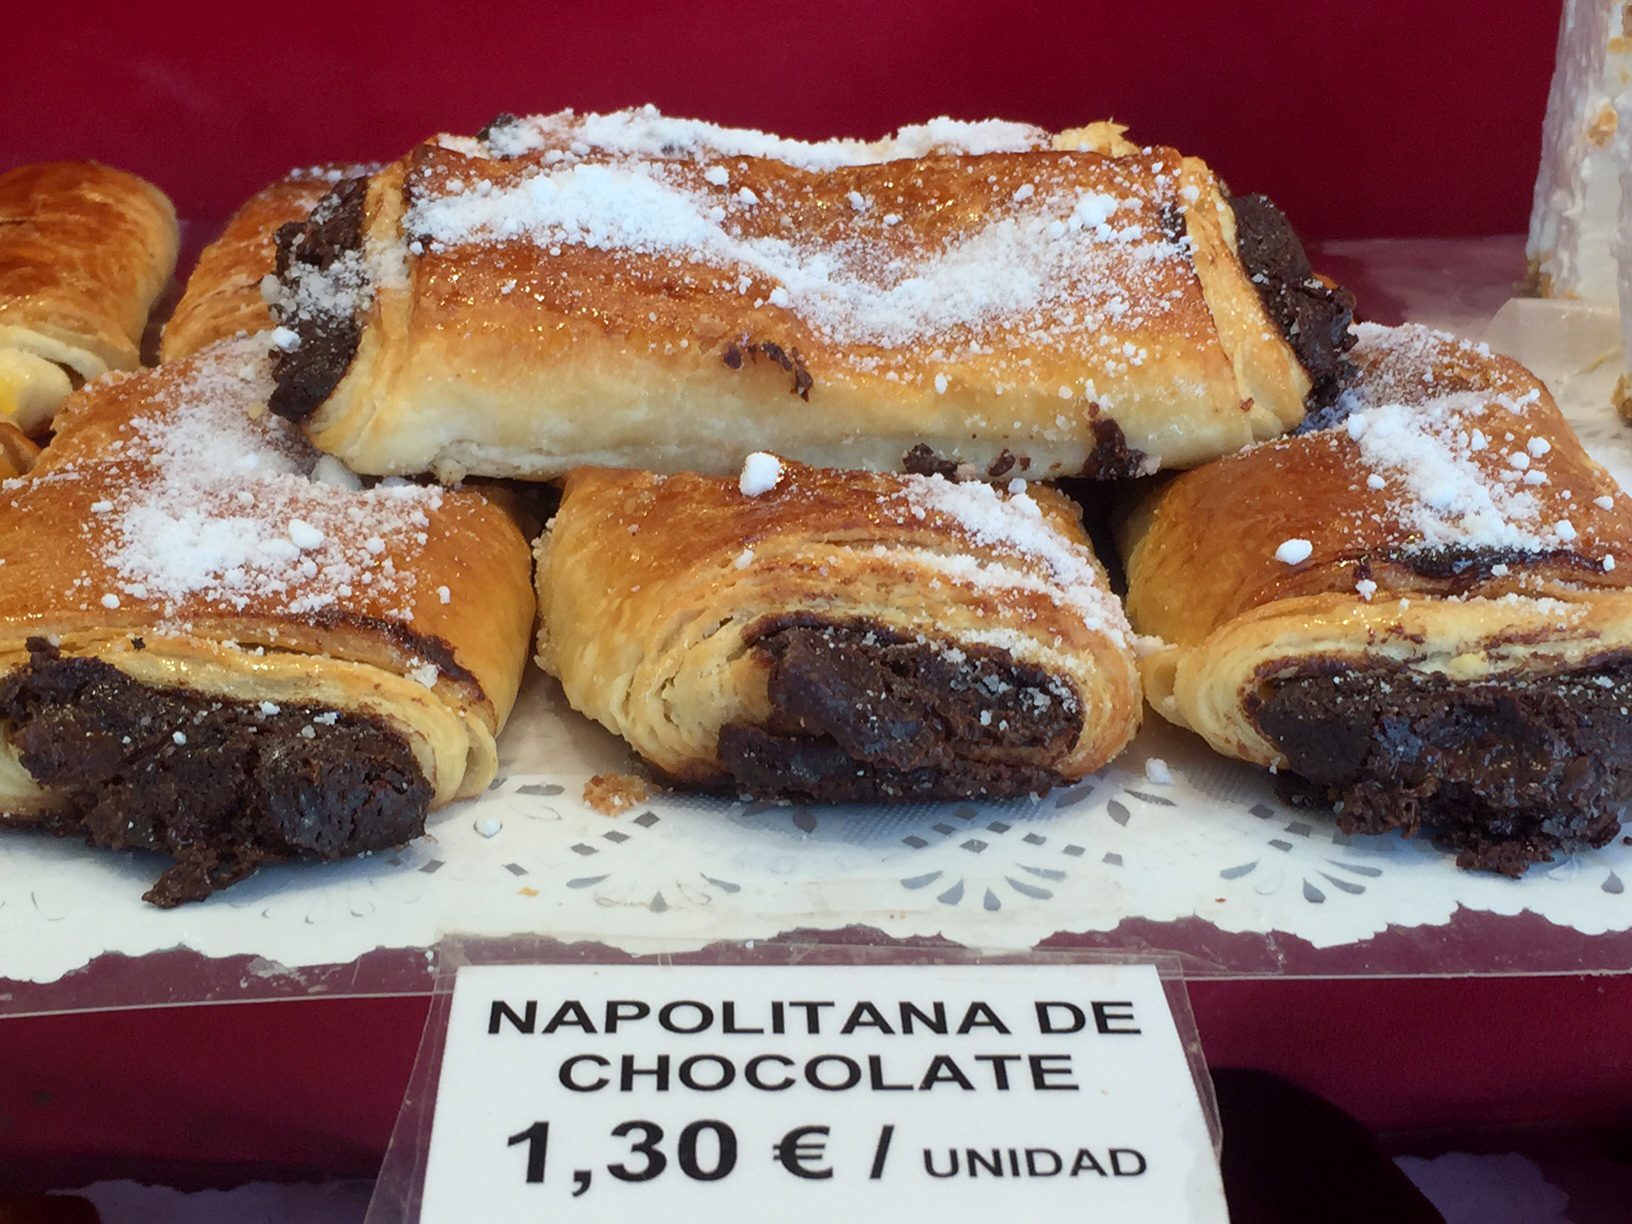 Napolitana chocolate, La Mallorquina 